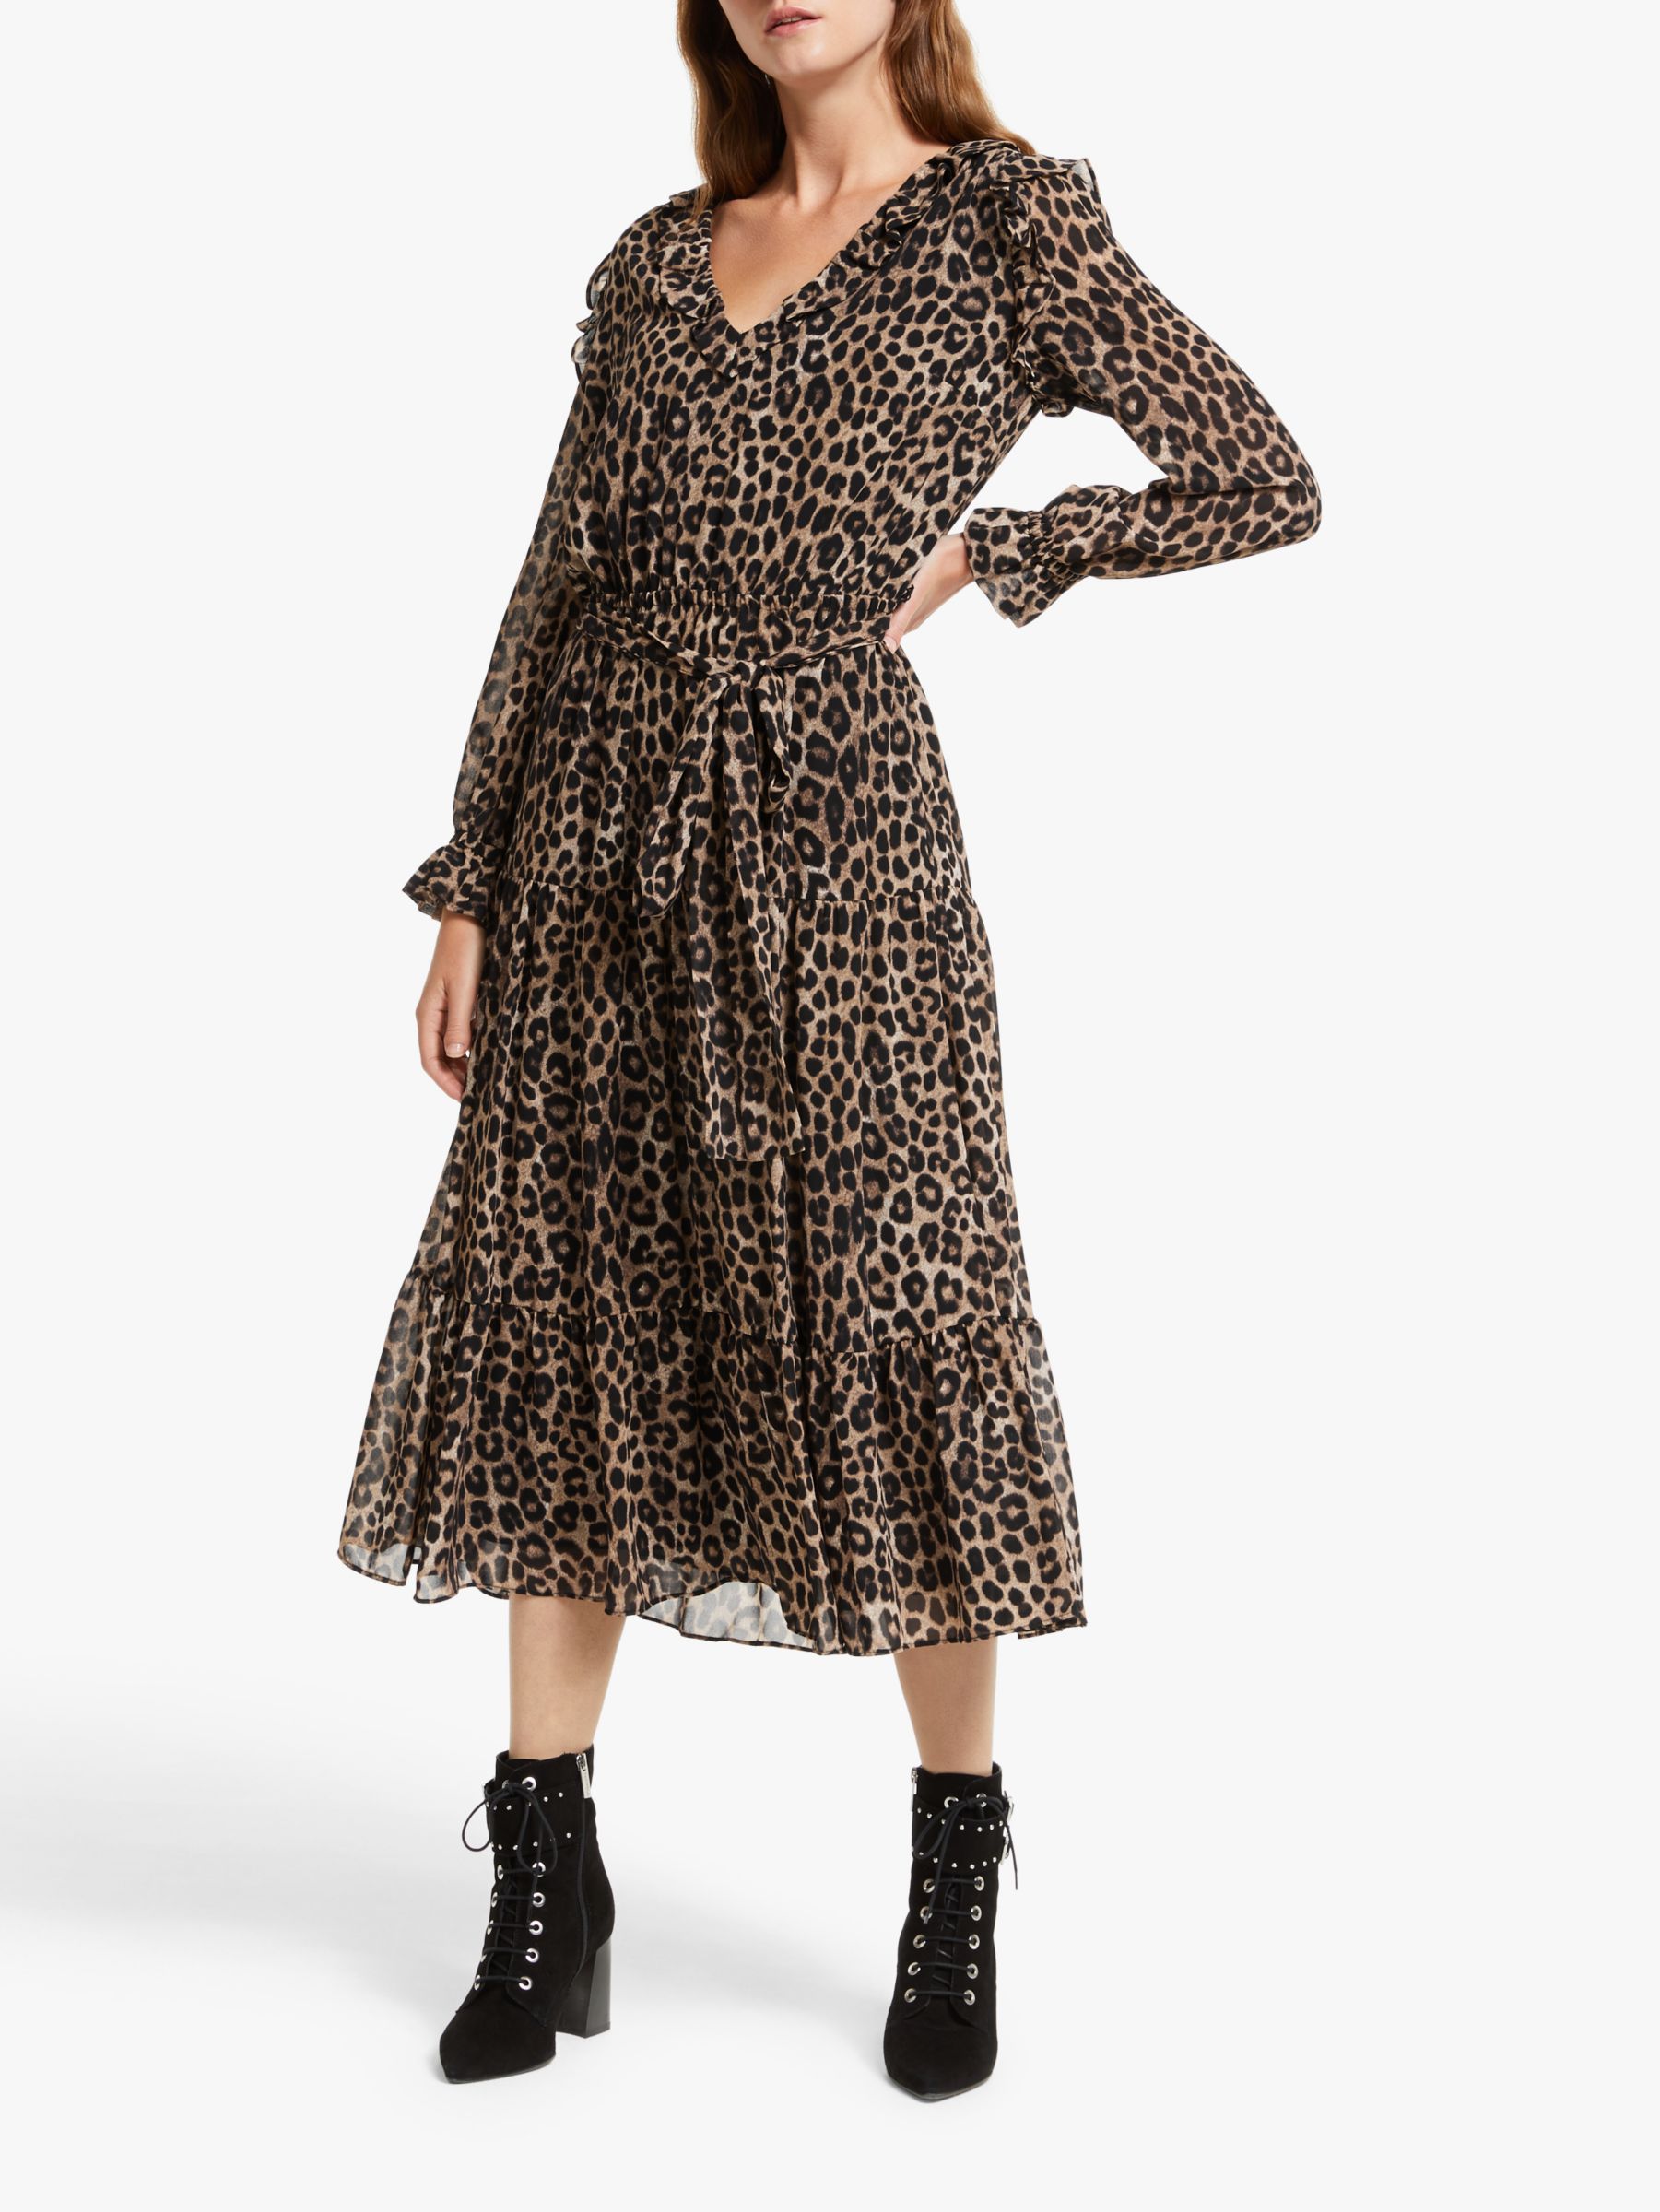 Total 40+ imagen michael kors cheetah print dress